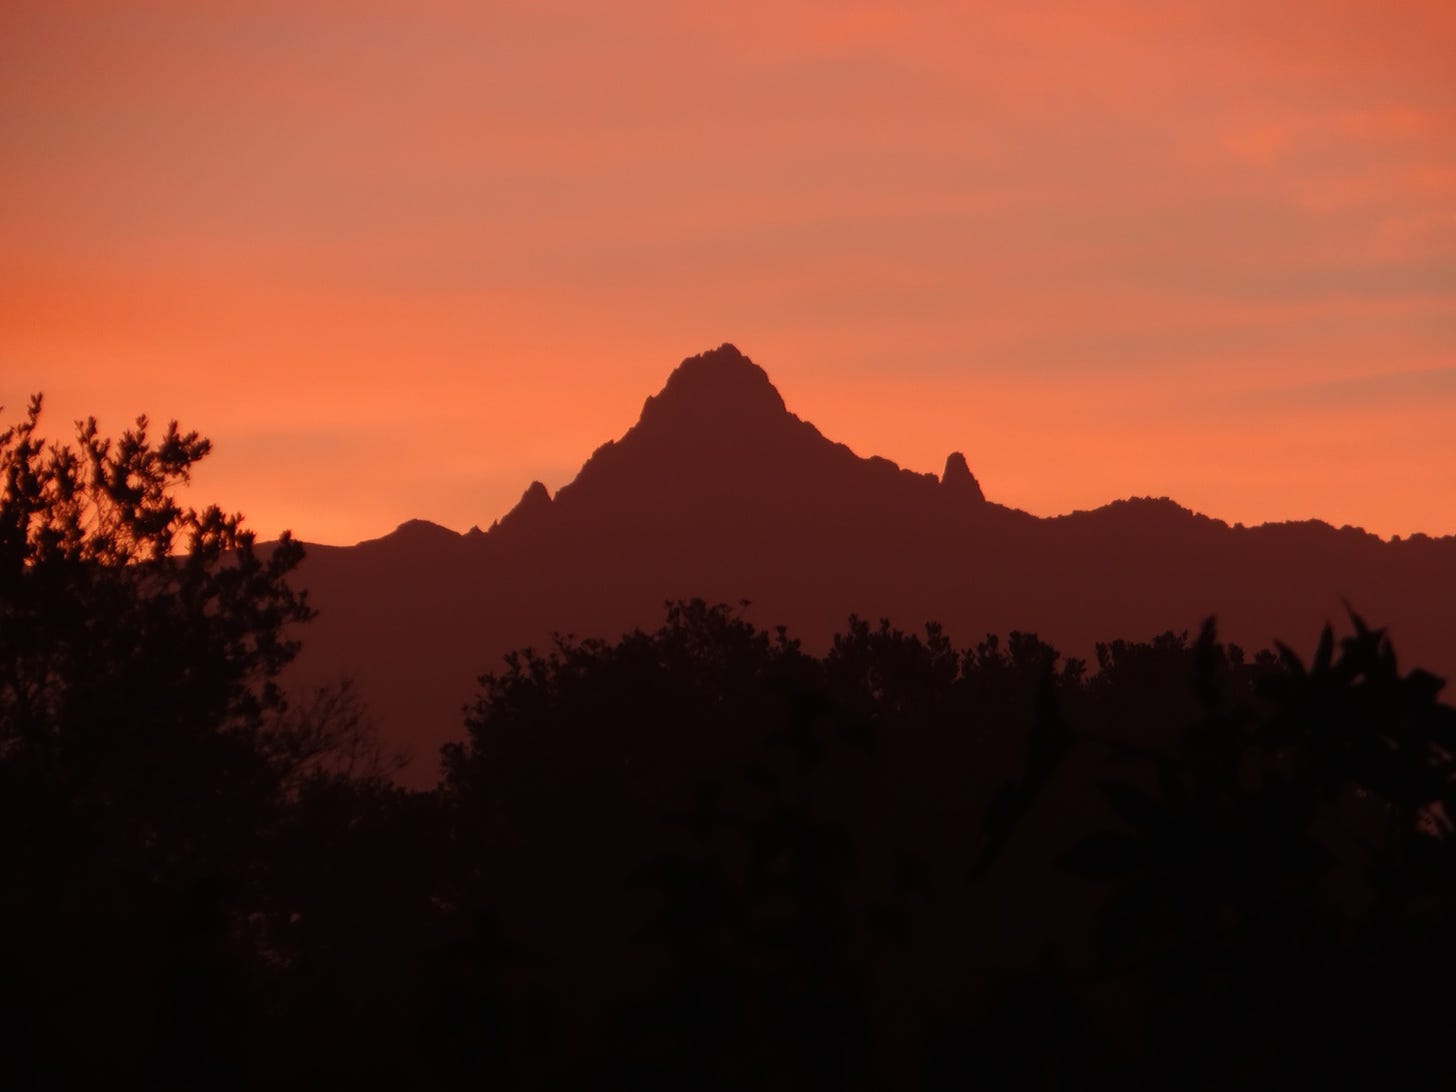 Sunrise over Mount Kenya from Ol Pejeta